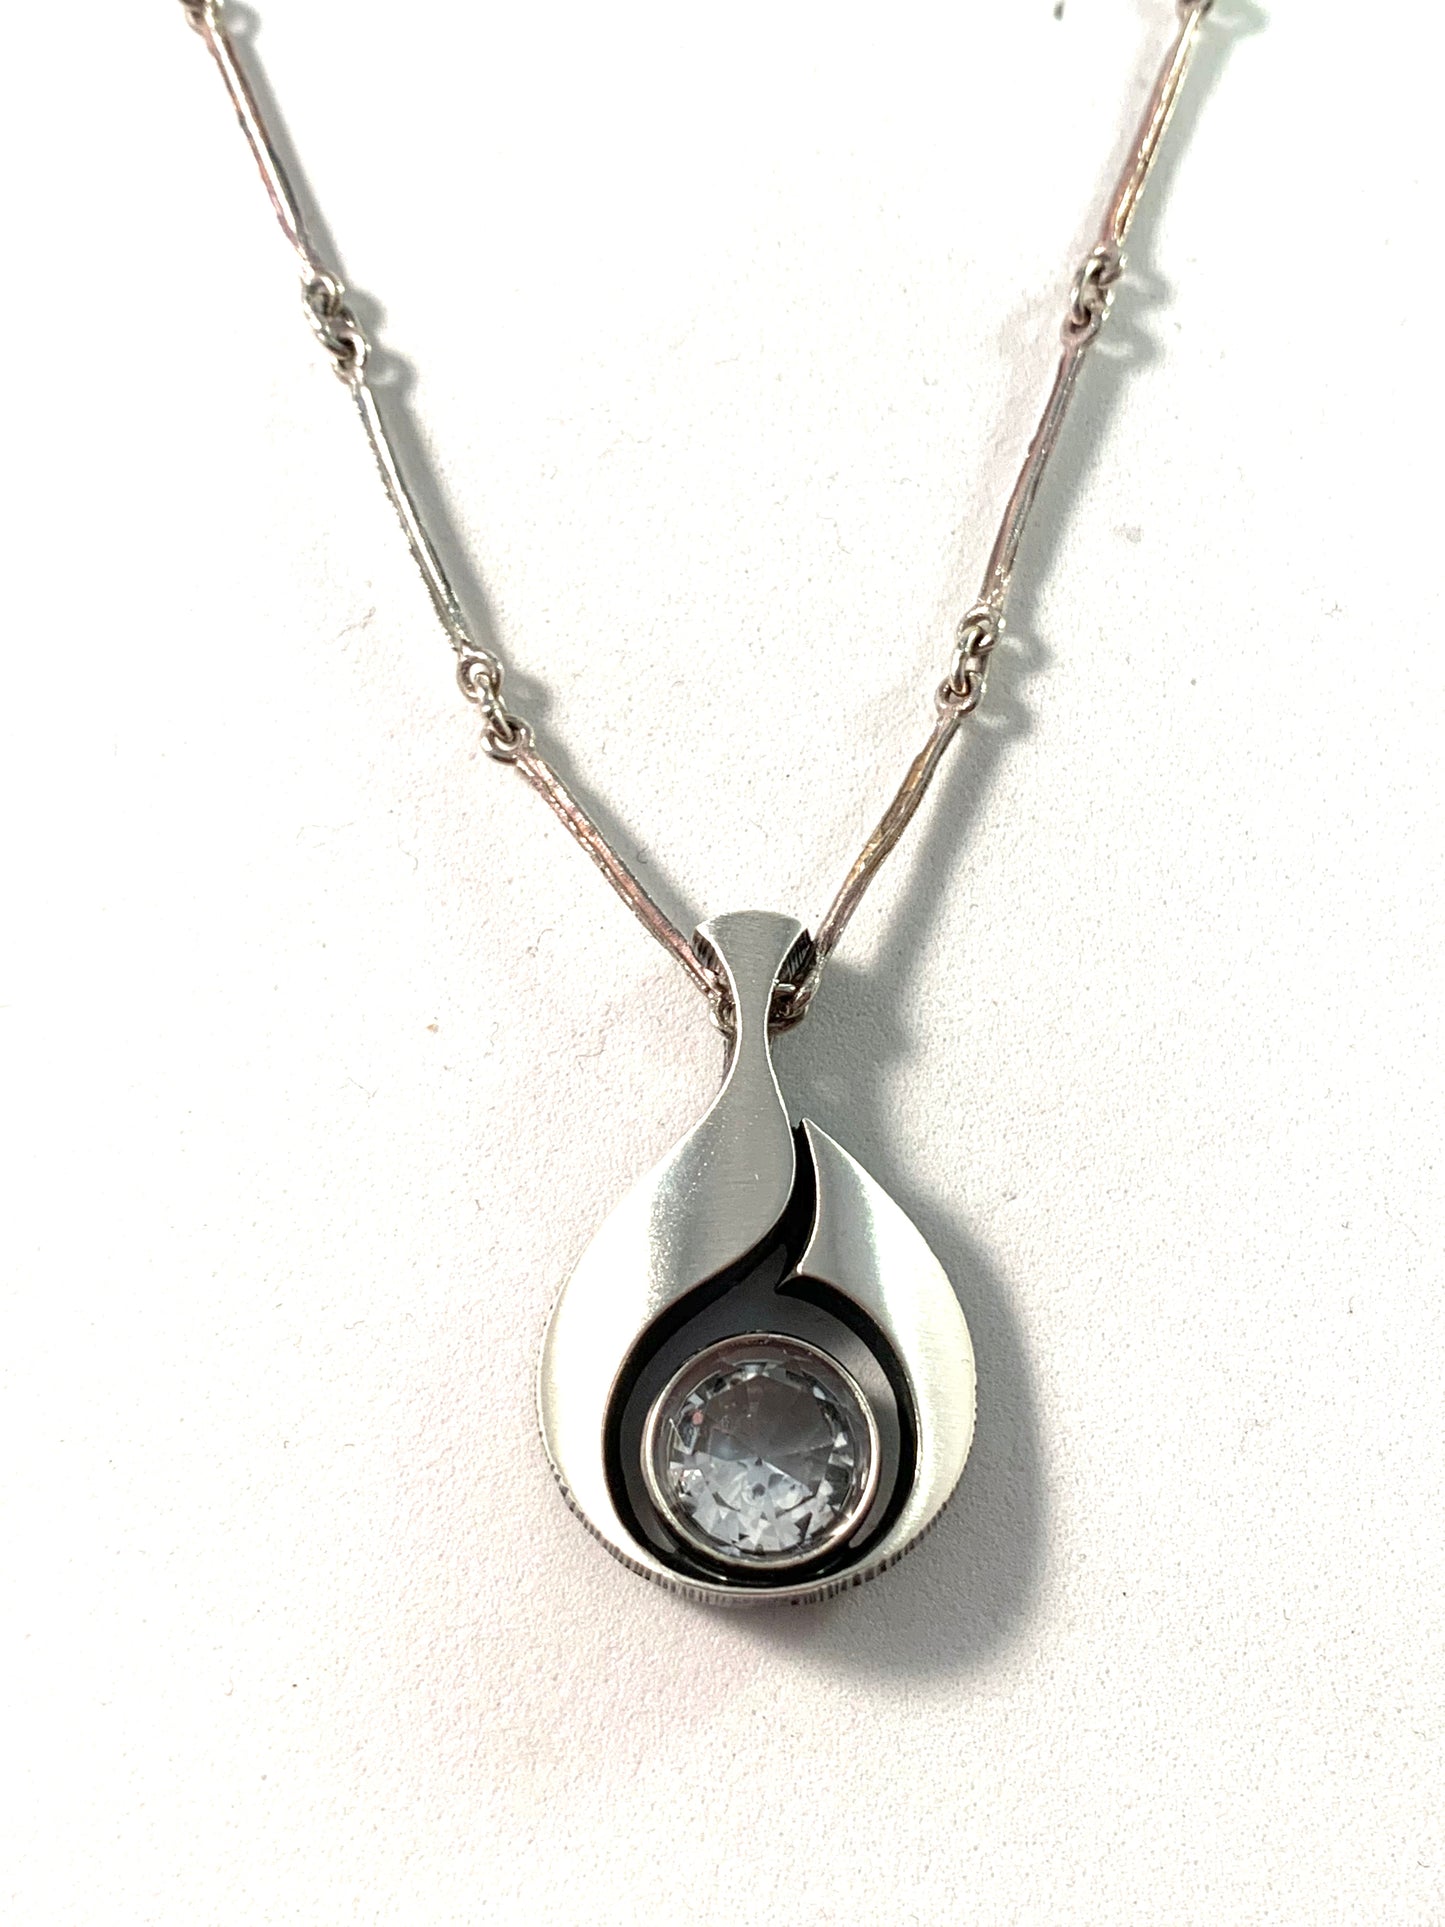 Karl Laine for Finnfeelings, Vintage Sterling Rock Crystal Pendant Necklace.